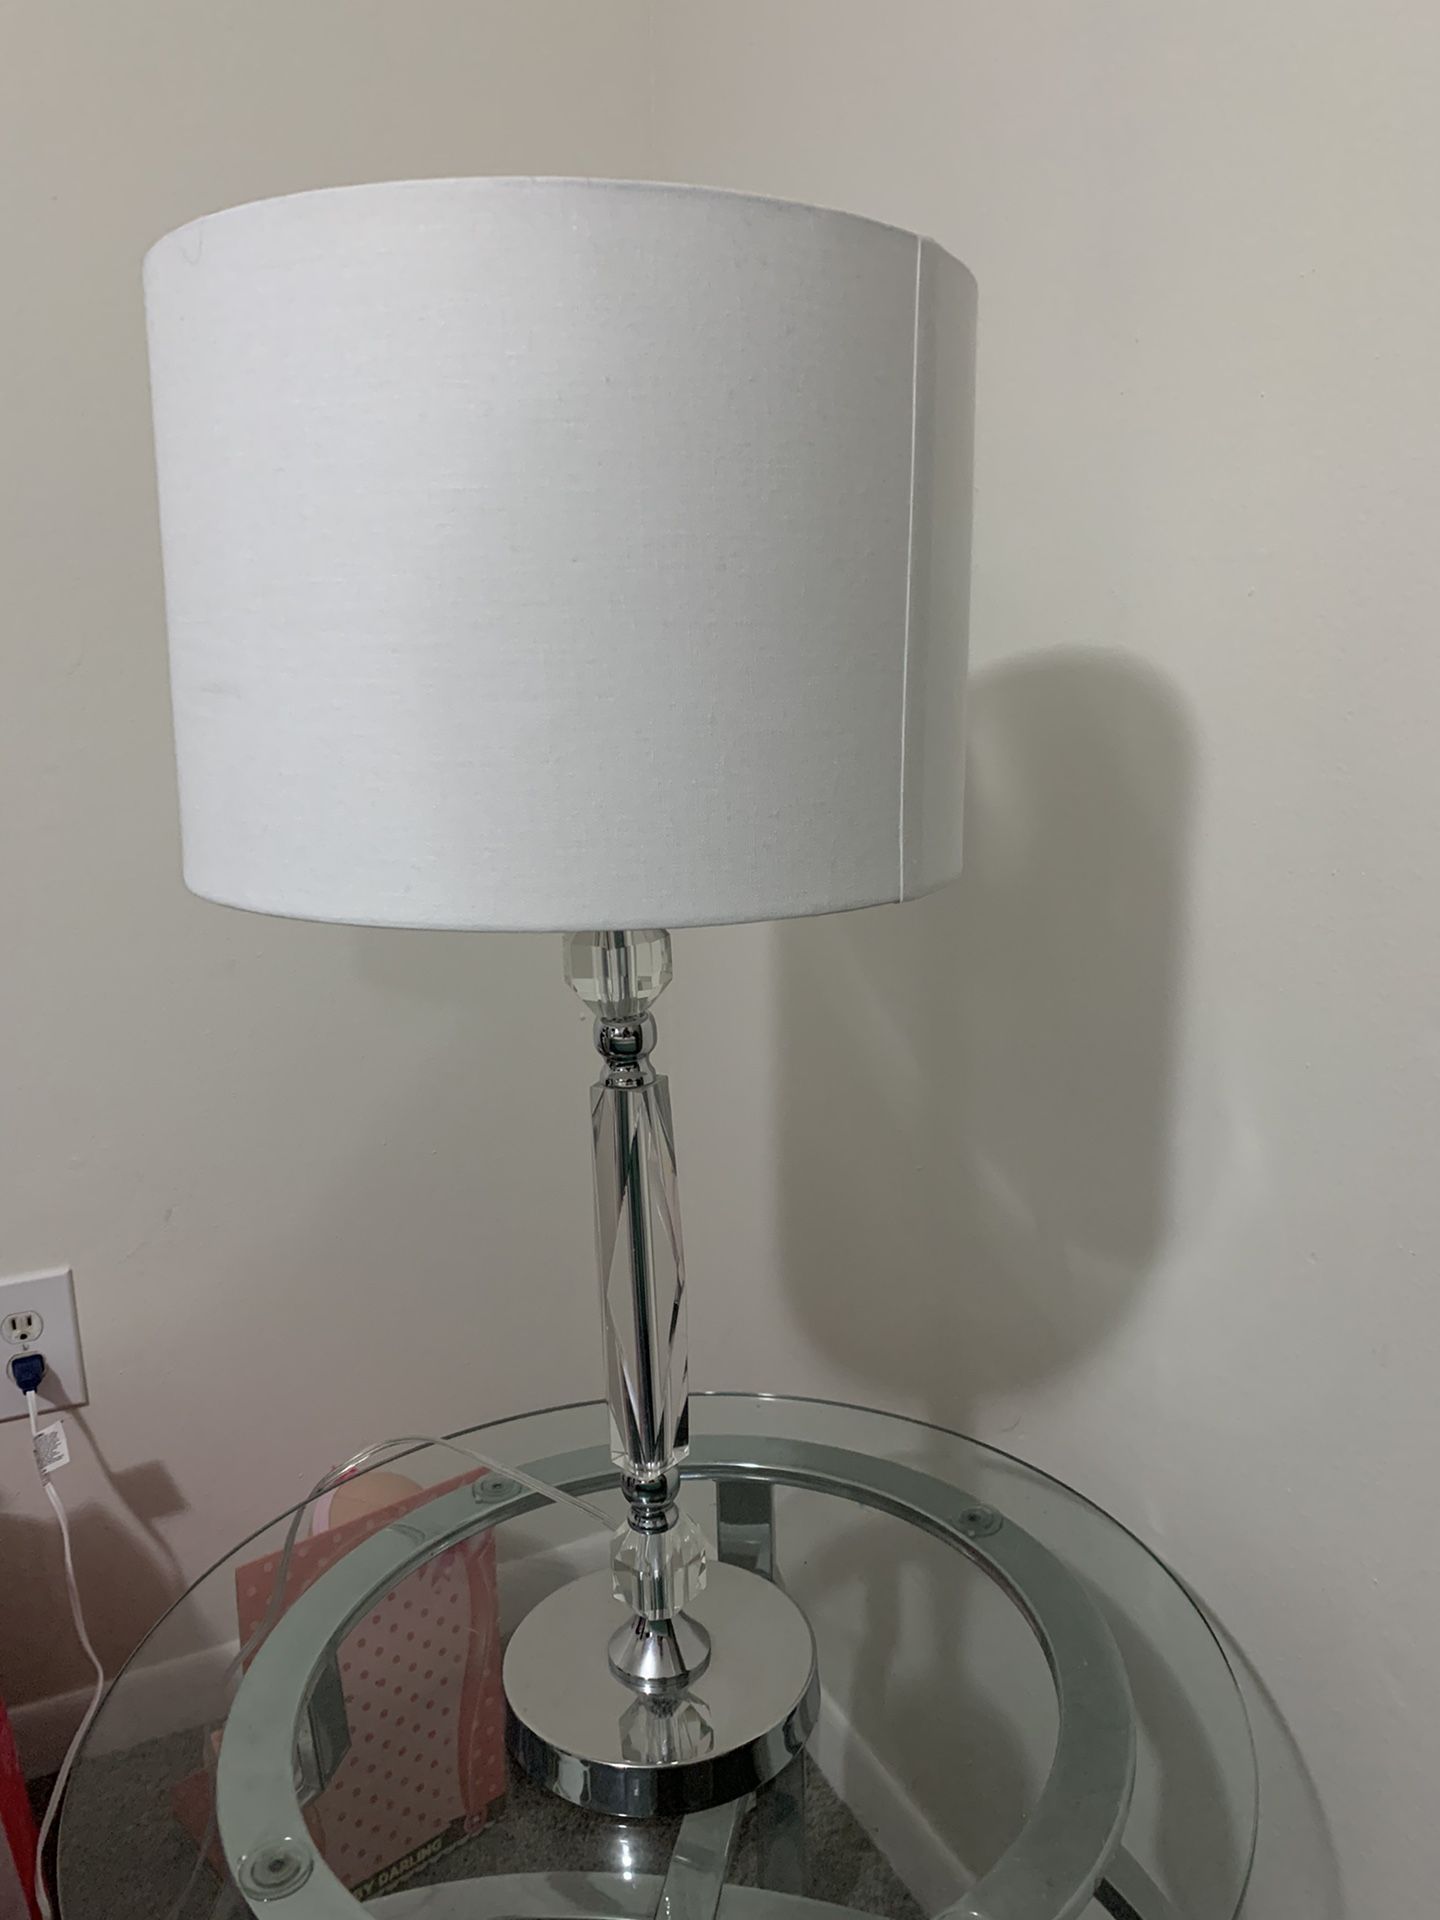 2 lamp